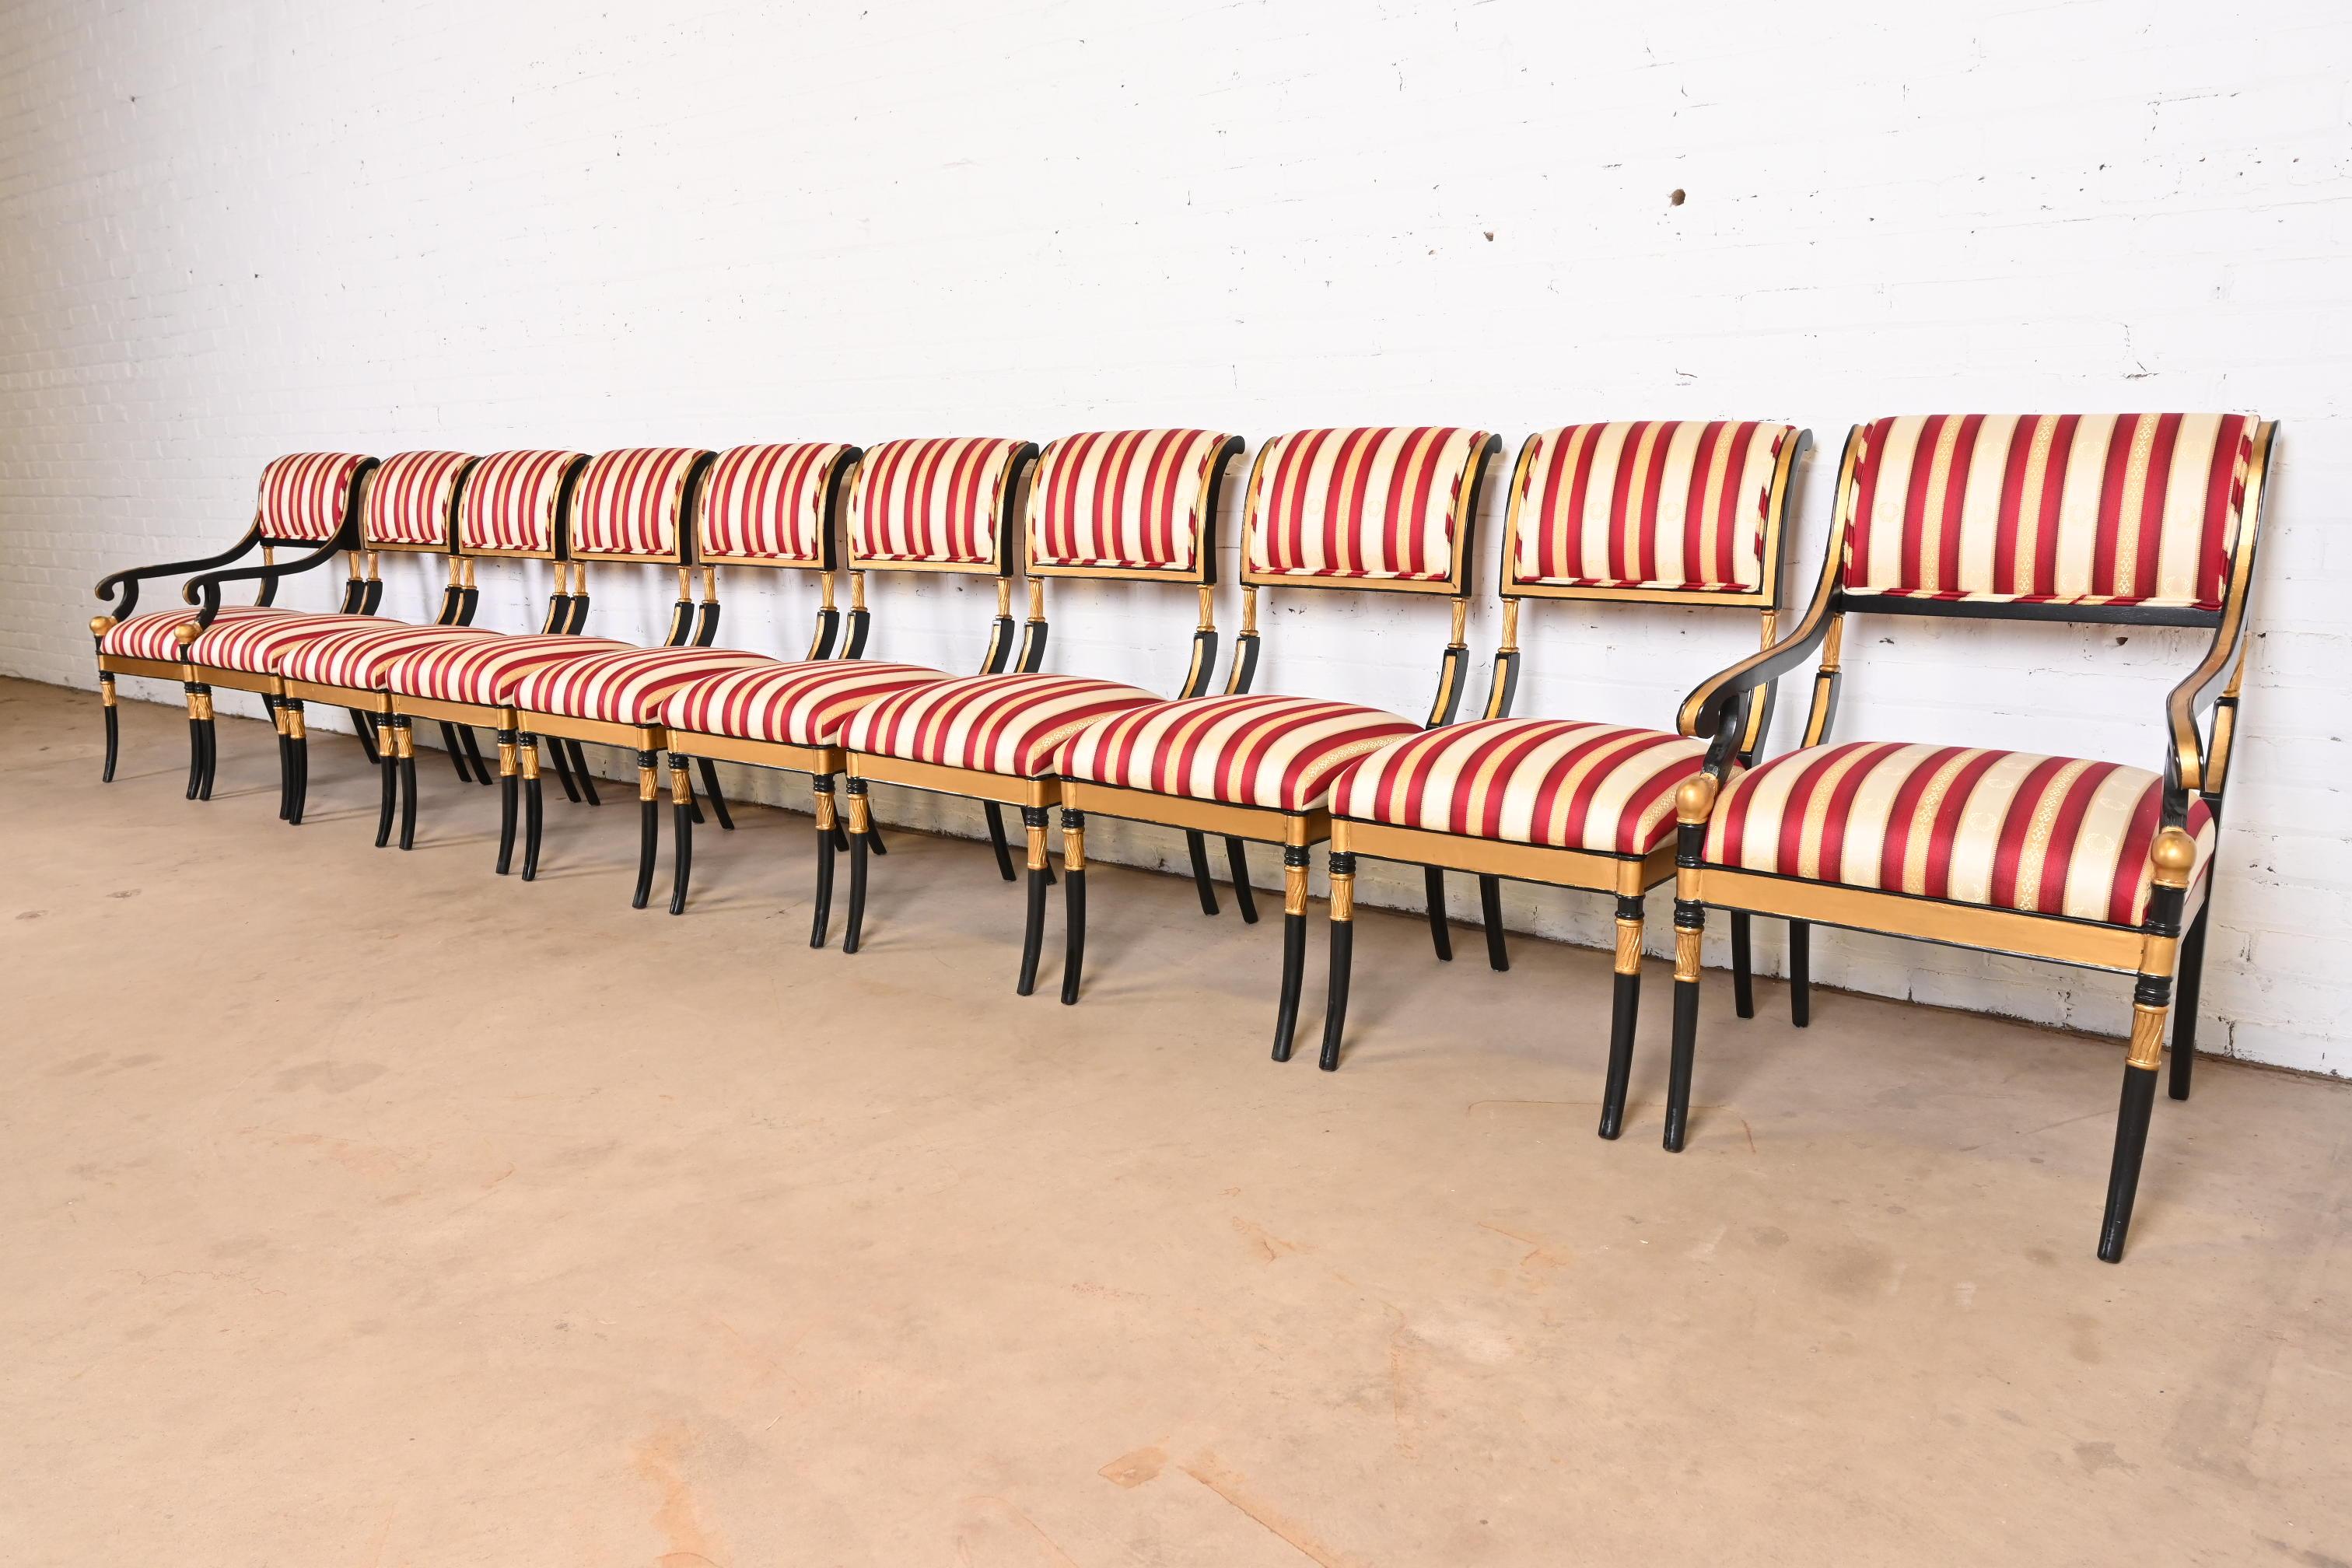 Ein prächtiger Satz von zehn Esszimmerstühlen im Regency-Stil

Nach dem Vorbild von Kindel Furniture

USA, 20. Jahrhundert

Geschnitzte Rahmen aus ebonisiertem und vergoldetem Holz, mit roten, goldenen und weißen